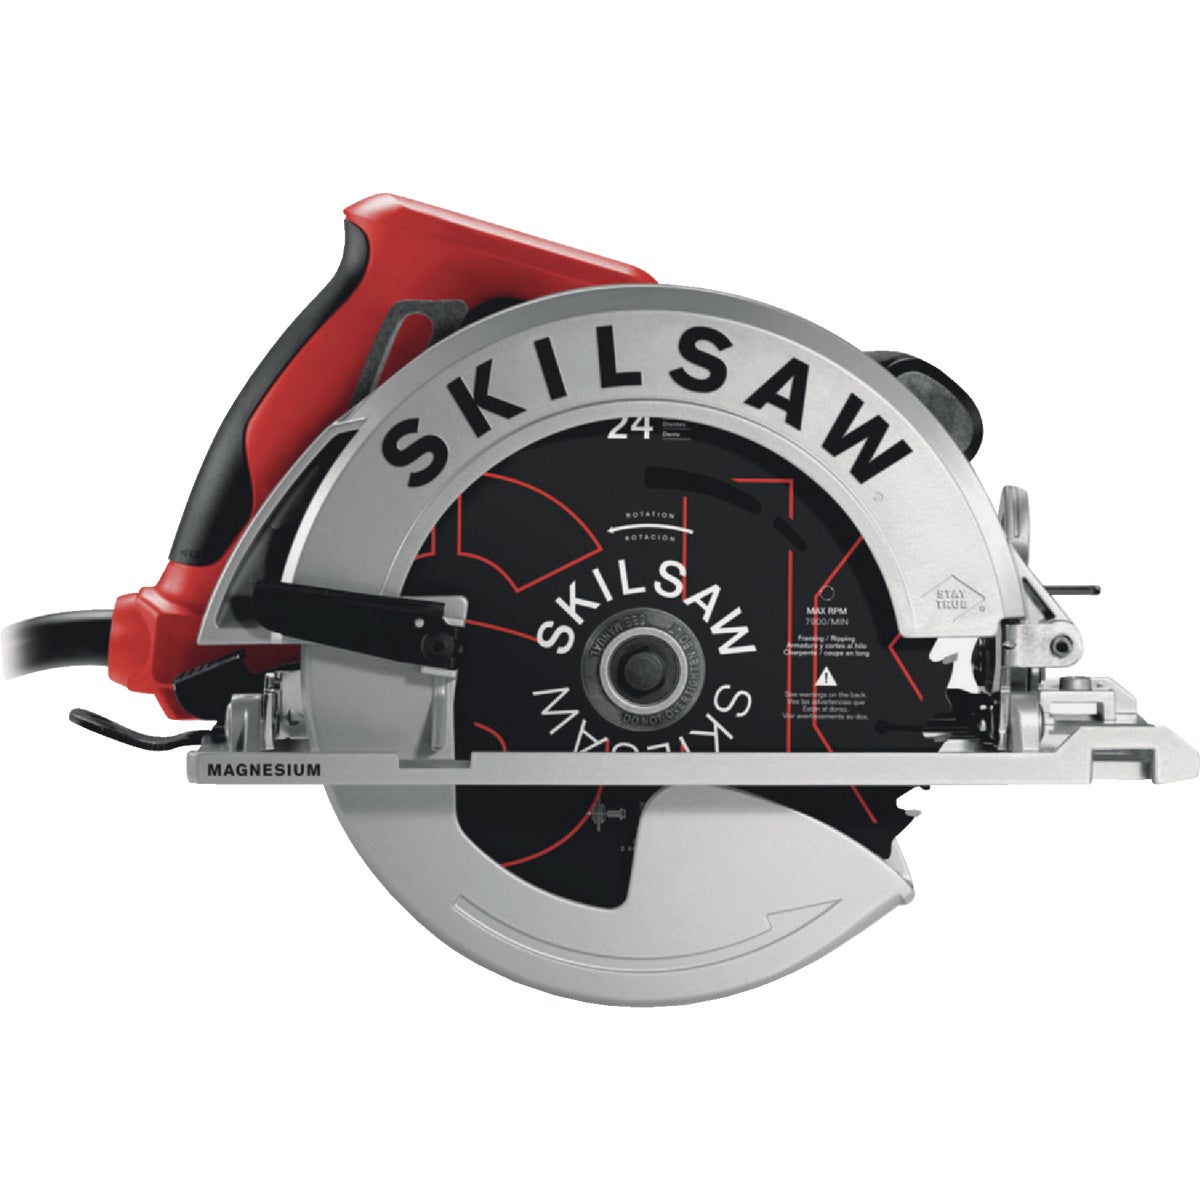 SKILSAW Sidewinder 7-1/4 In. 15-Amp Lighweight Circular Saw